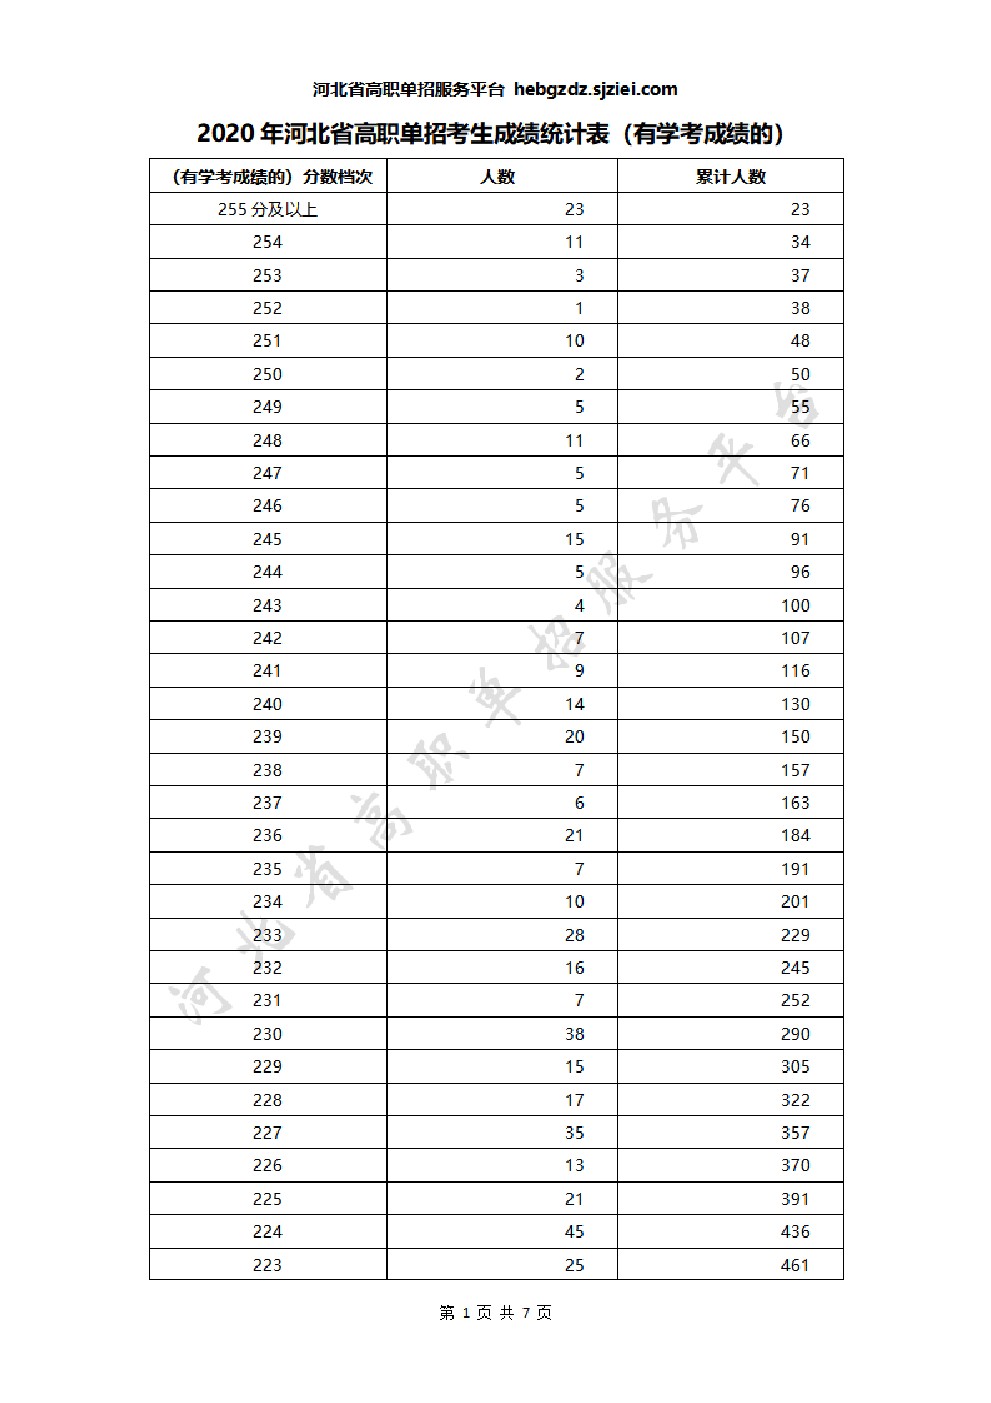 2020年河北省高职单招考生成绩统计表(有学考成绩的) 